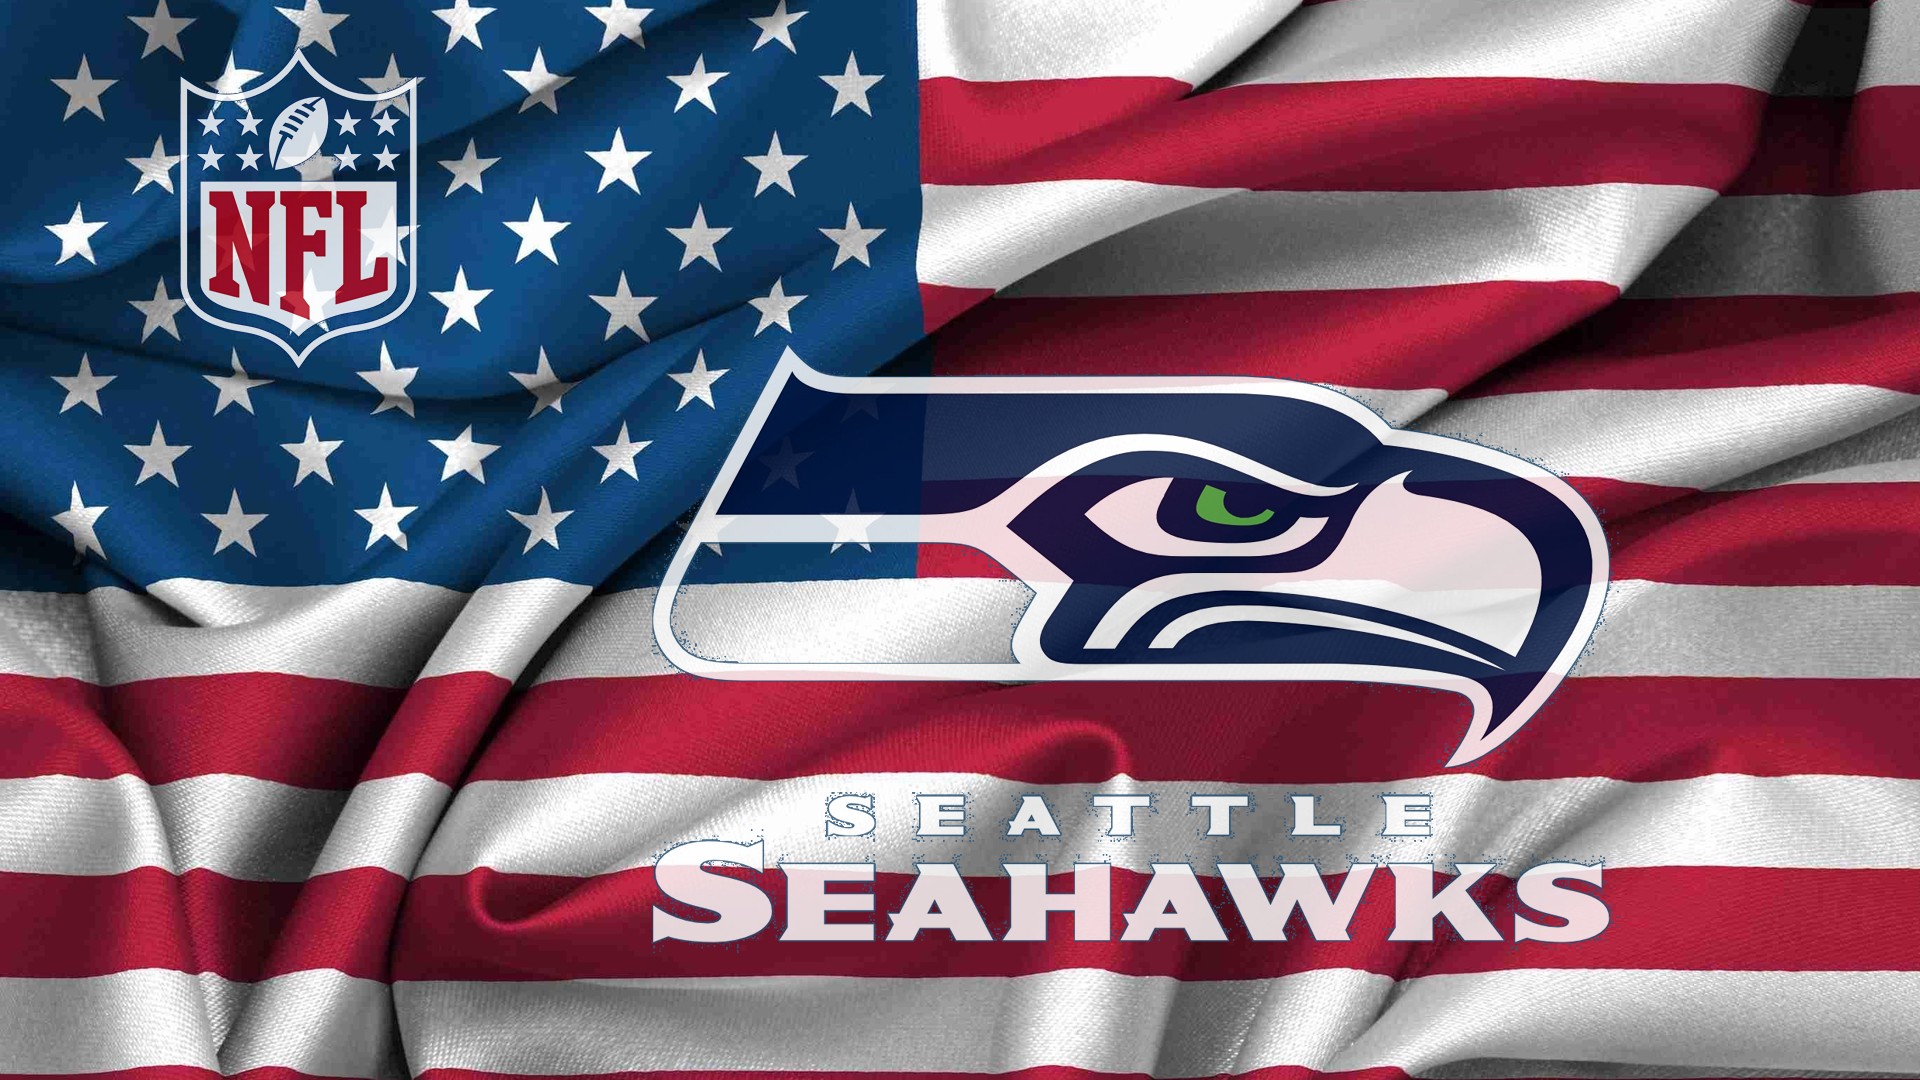 Seattle Seahawks Nfl HD Image